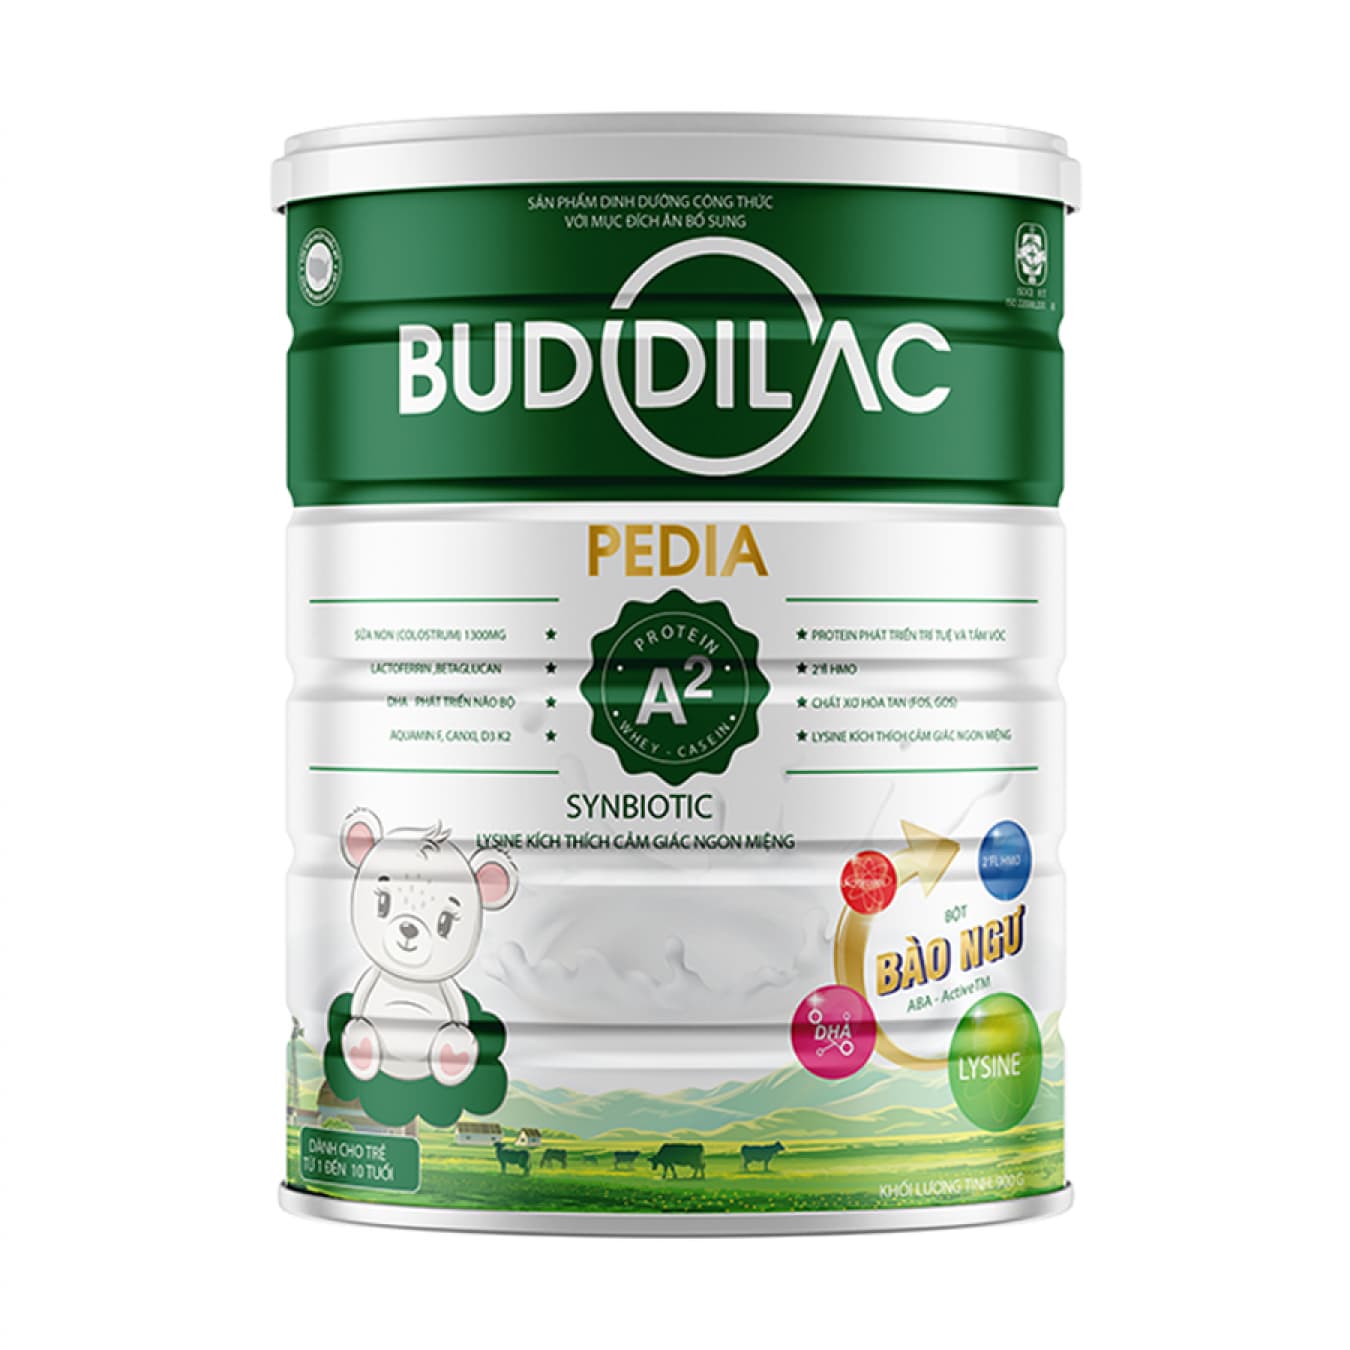 Sữa Buddilac Pedia hộp 900g giúp trẻ trên 1 tuổi phát triển toàn diện